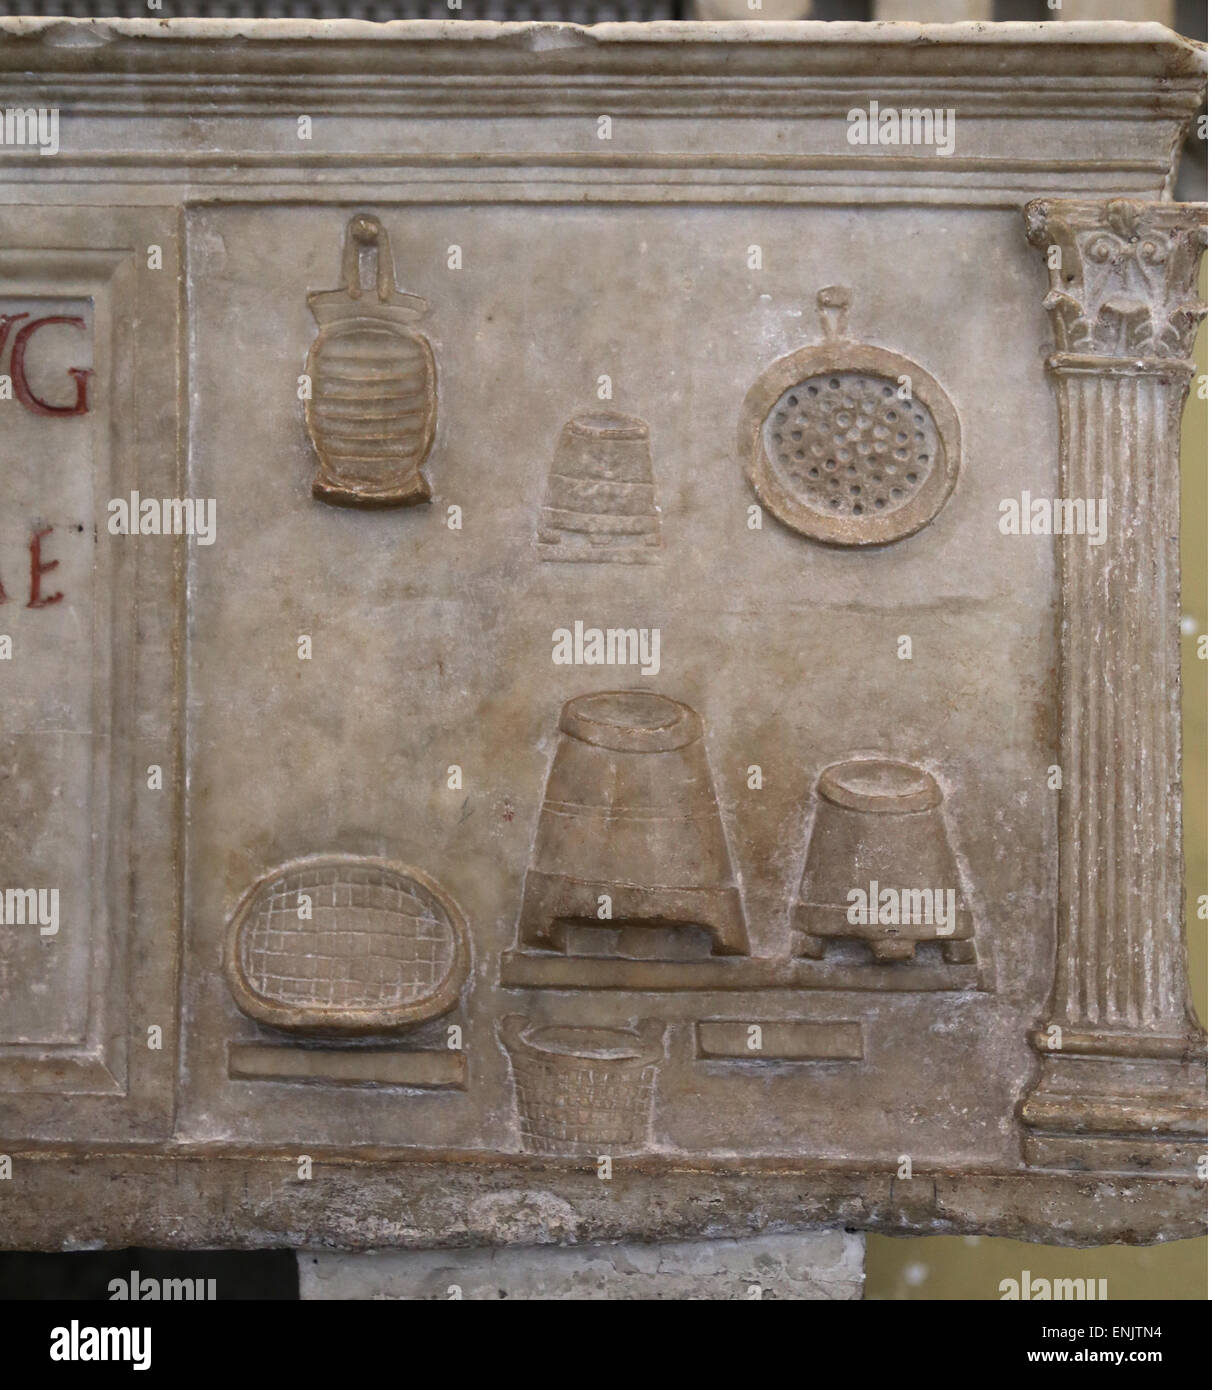 Titulaire de l'URN miller Publius Nonius Zethus. D'Ostia. Les reliefs représentent des scènes de la miller's work : Outils. Banque D'Images